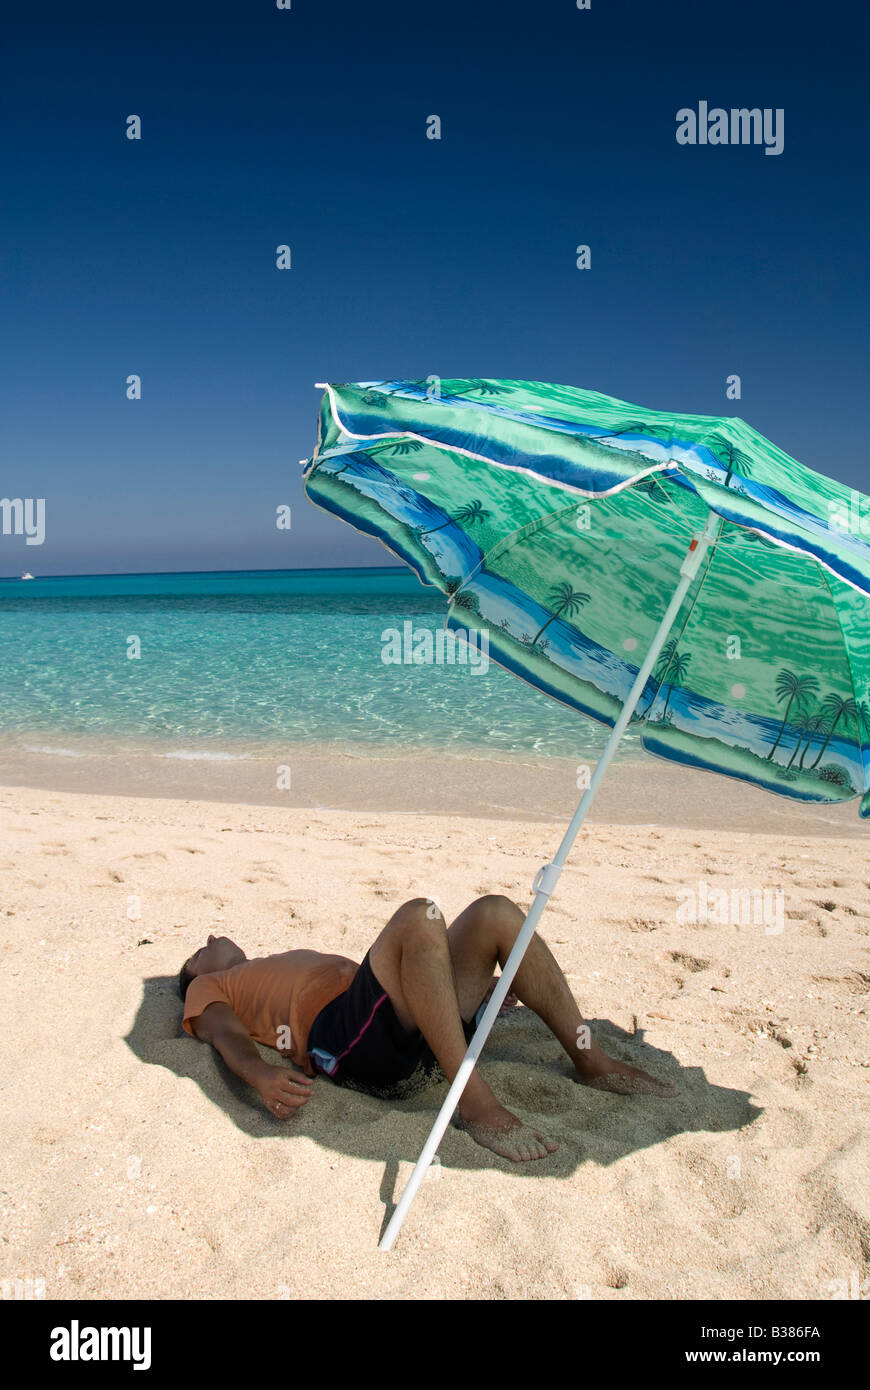 Un homme se détendre sous parasol sur la plage Photo Stock - Alamy